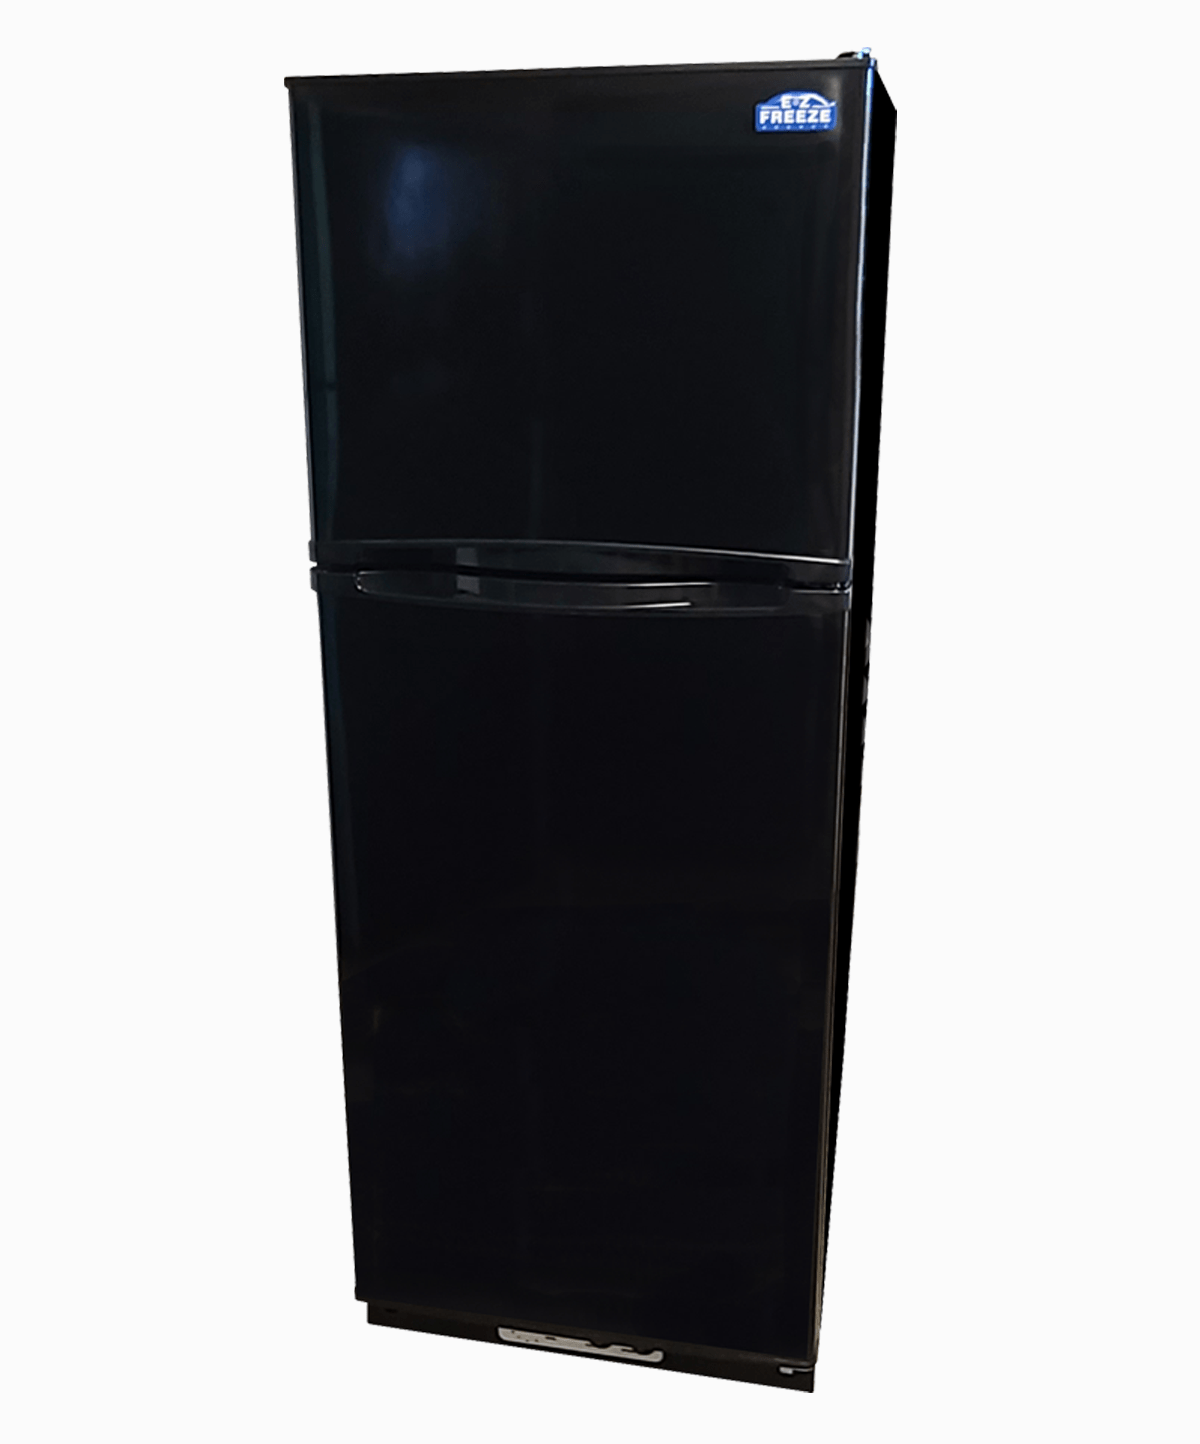 EZ Freeze Propane Refrigerator EZ Freeze 11 Cu. Ft. Black Propane Gas Refrigerator EZ-1065B